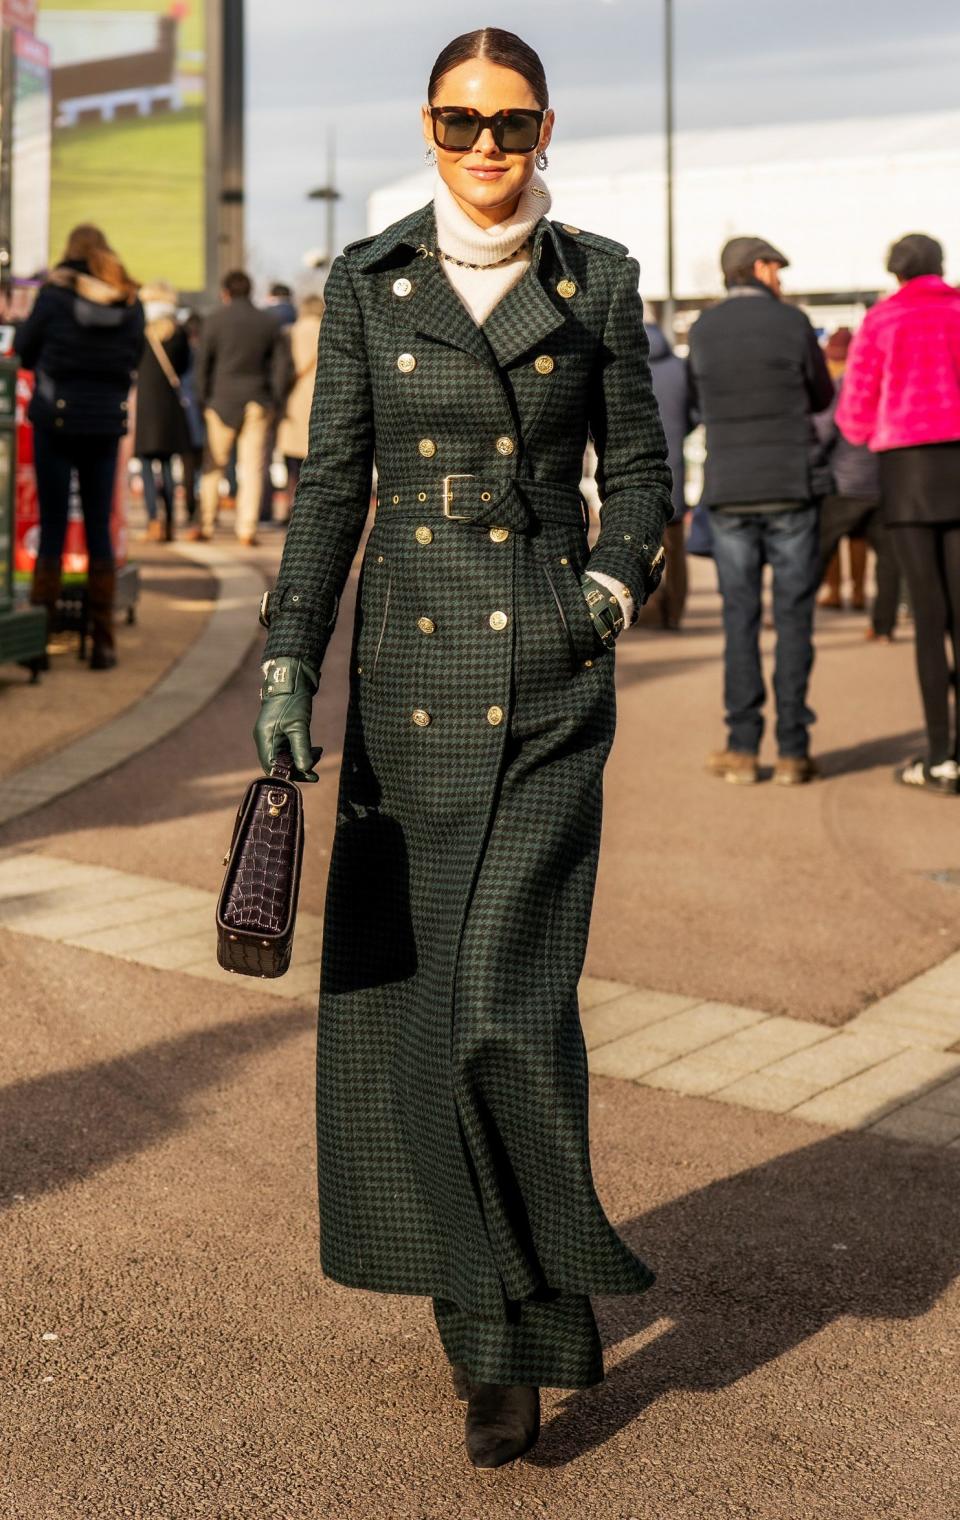 Ο Jade Holland Cooper φοράει ένα σμαραγδένιο κυνηγόσκυλο στο Φεστιβάλ του Cheltenham